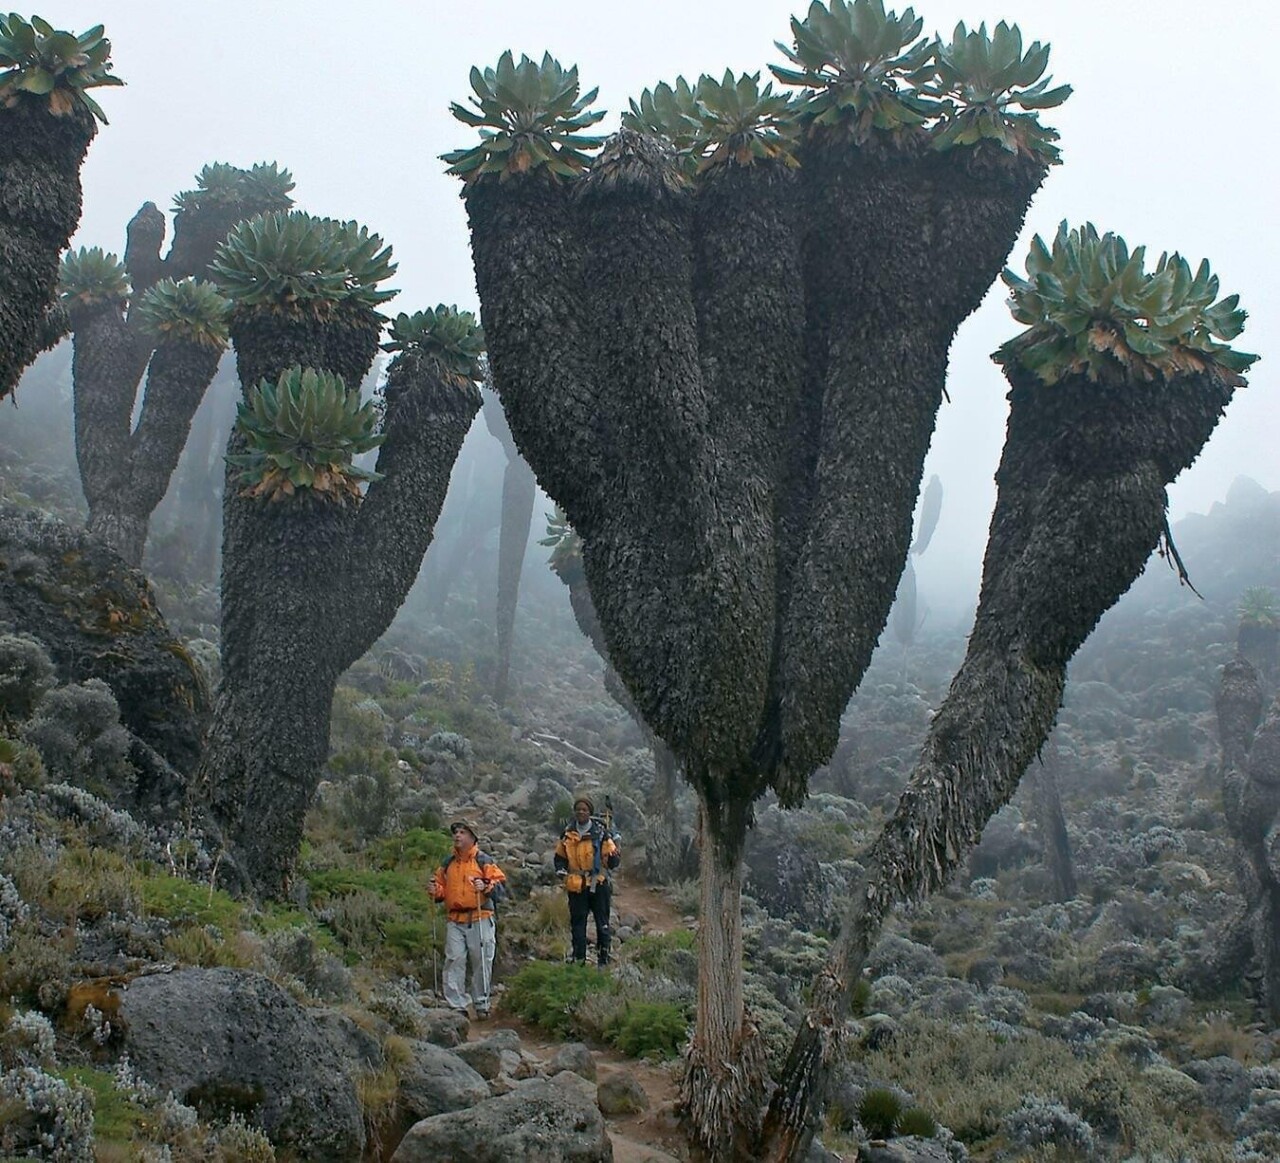 Гигантские крестовники, доисторические растения, обнаруженные на горе Килиманджаро